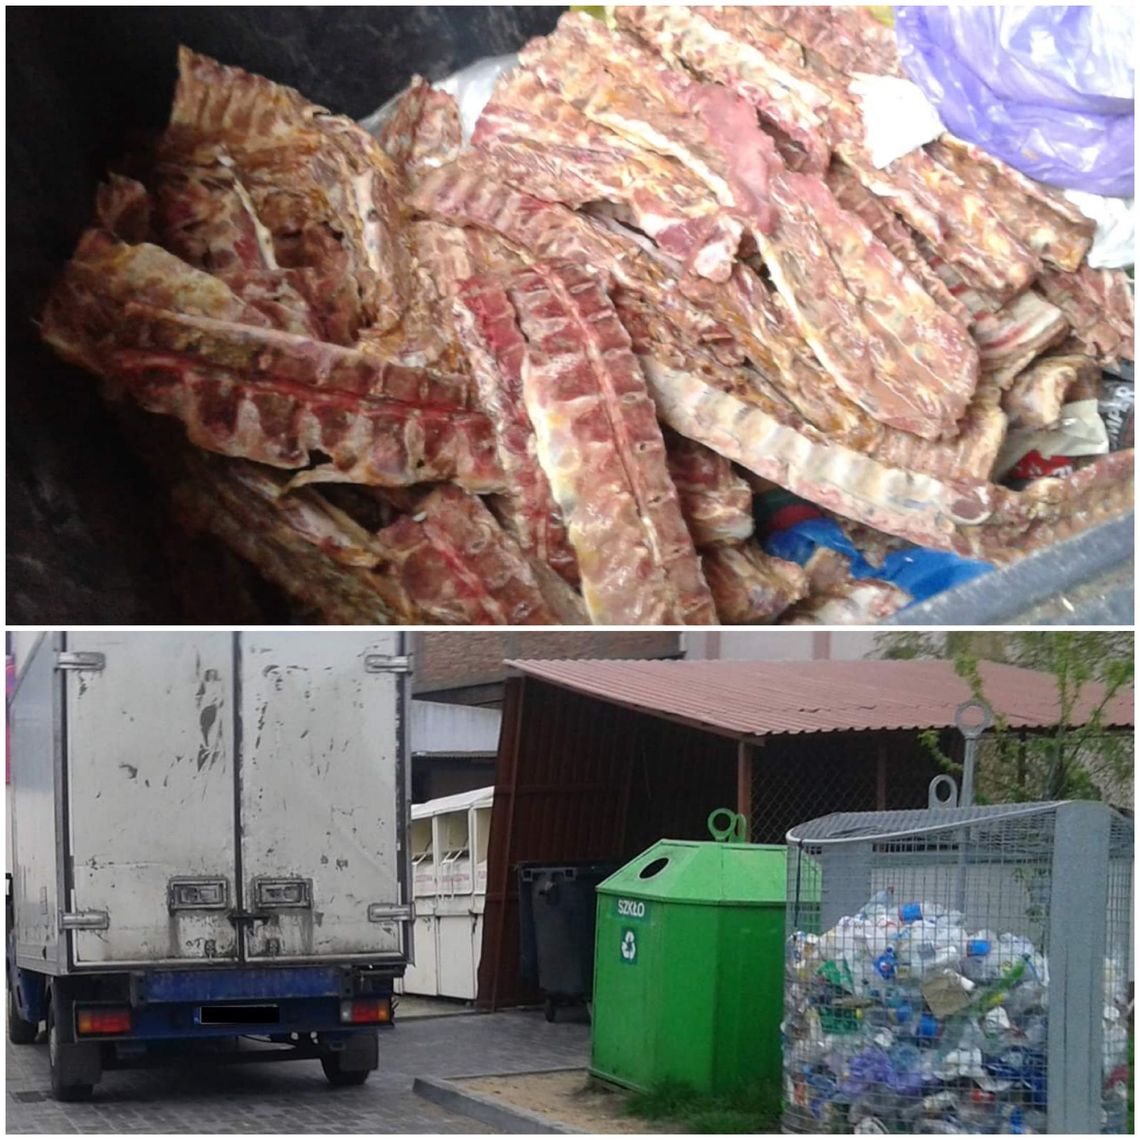 "Śmierdzące odpady mięsne" trafiły do przyblokowego śmietnika przy ul. Wyszyńskiego. Straż Miejska odmówiła wysłania patrolu